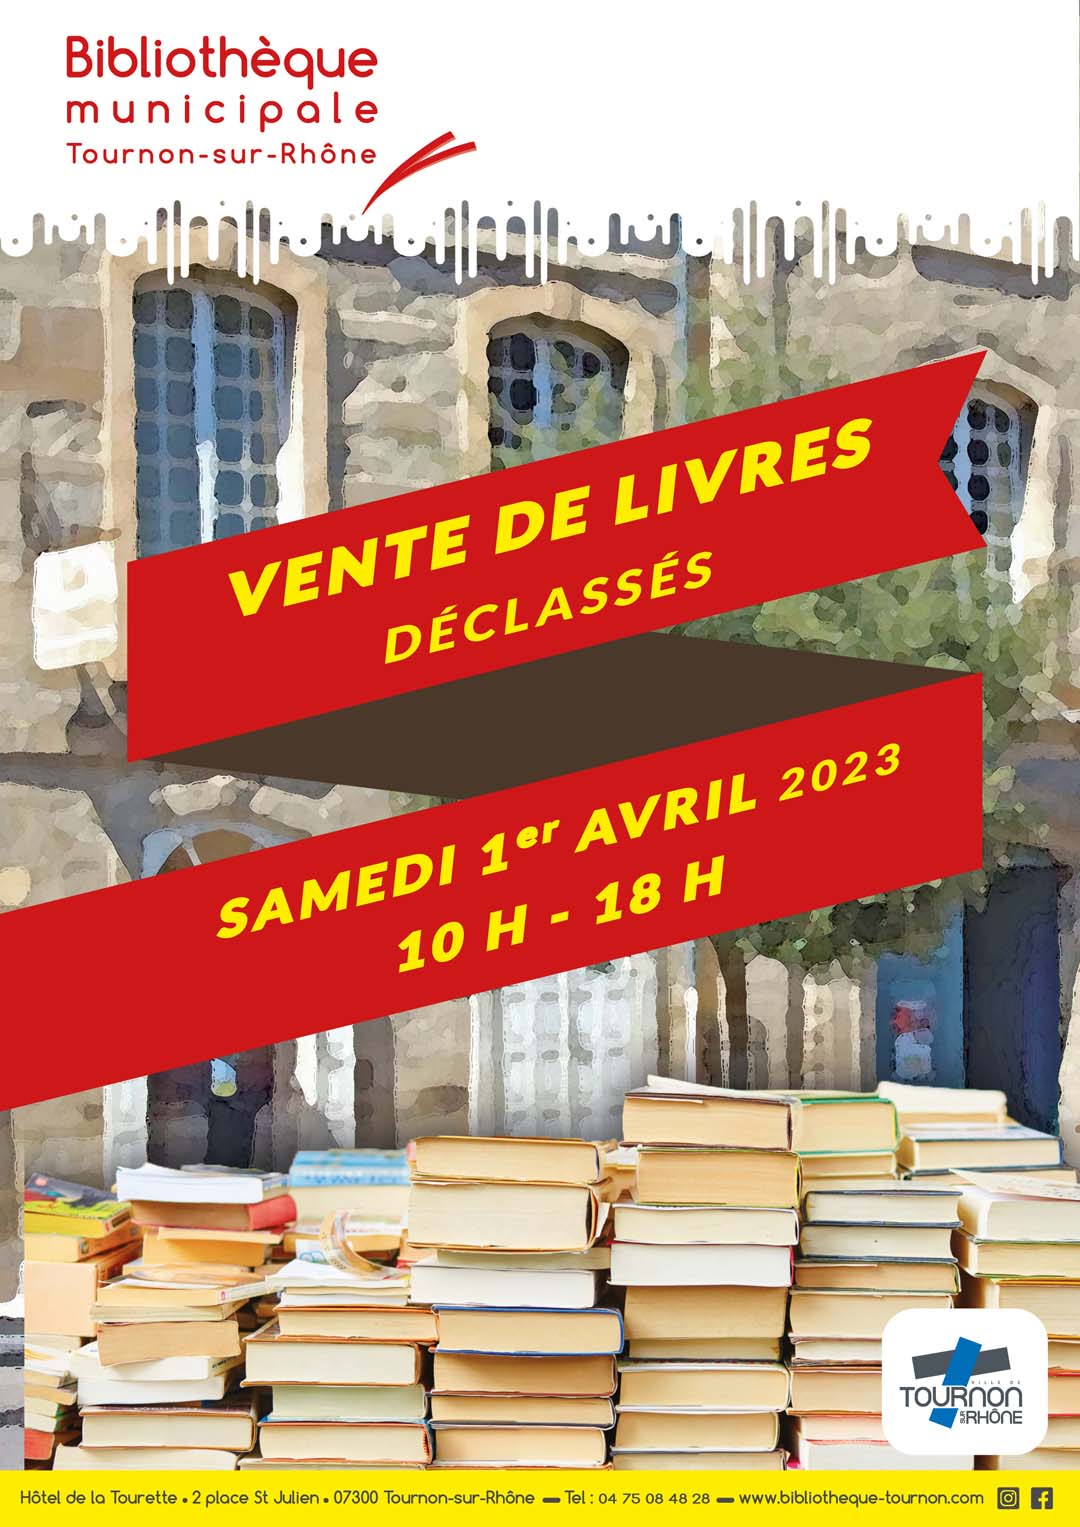 VENTE DE LIVRES DÉCLASSÉS. Samedi 1er avril 2023 -Bibliothèque municipale.